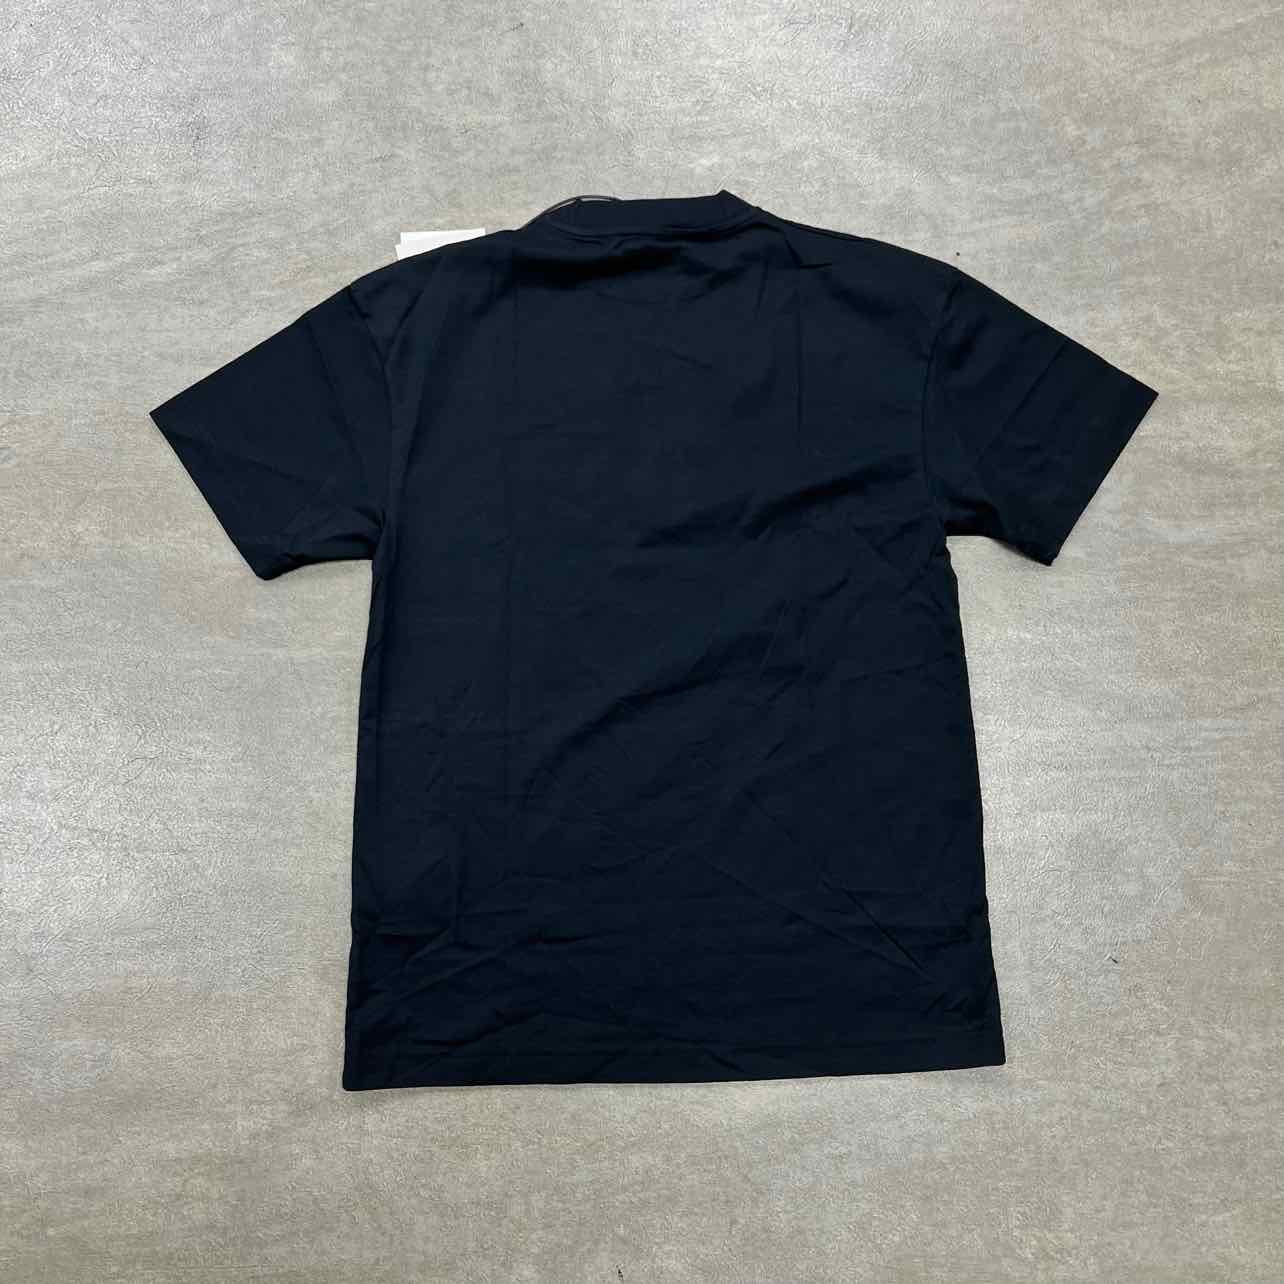 Palm Angels T-Shirt &quot;FRONT LOGO&quot; Black New Size S